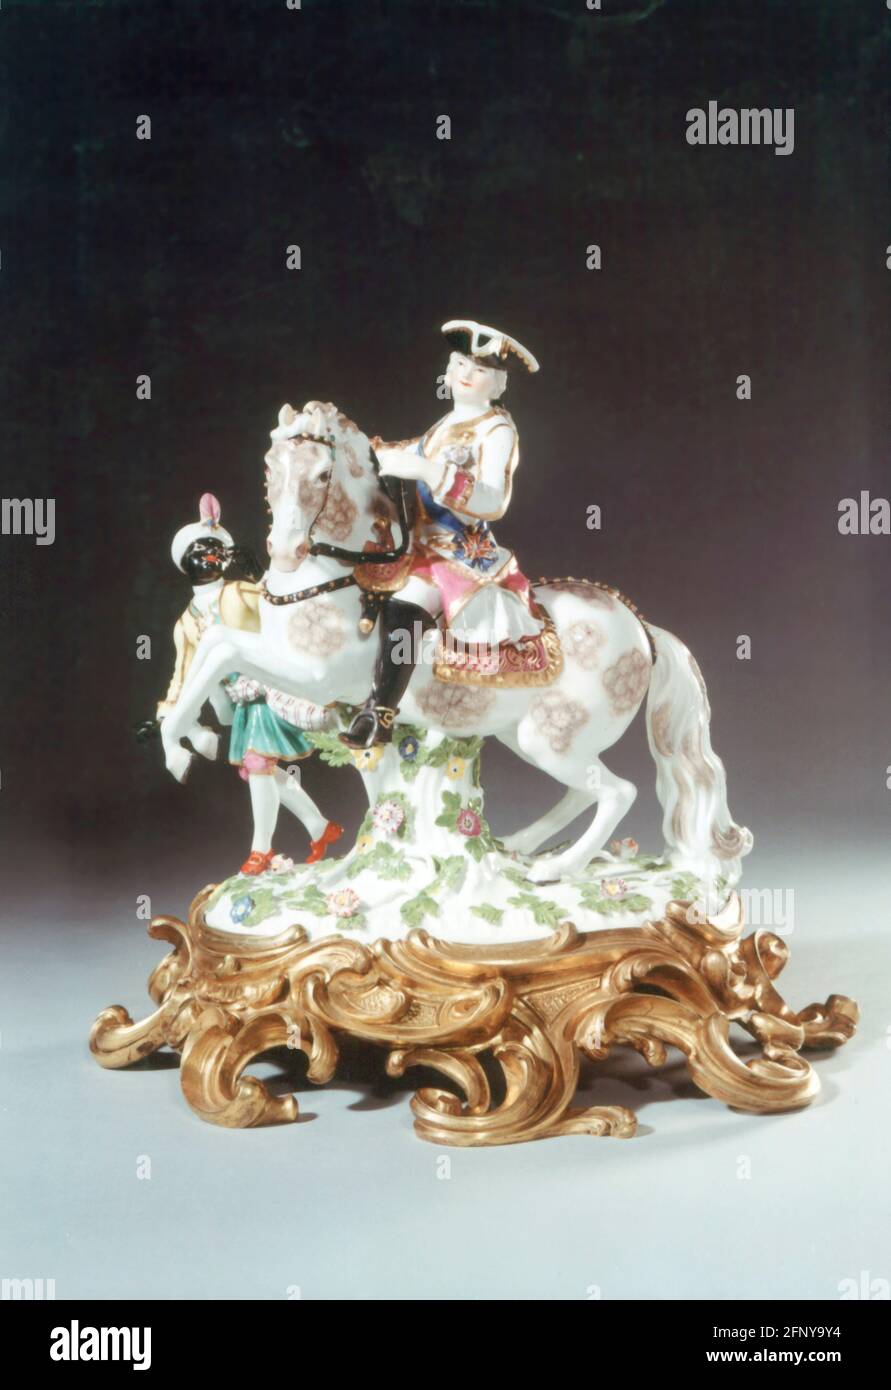 Belle arti, porcellane, imperatrice Elisabetta di Russia, disegno di Johann Joachim Kändler (1706 - 1775), IL DIRITTO D'AUTORE DELL'ARTISTA NON DEVE ESSERE ELIMINATO Foto Stock